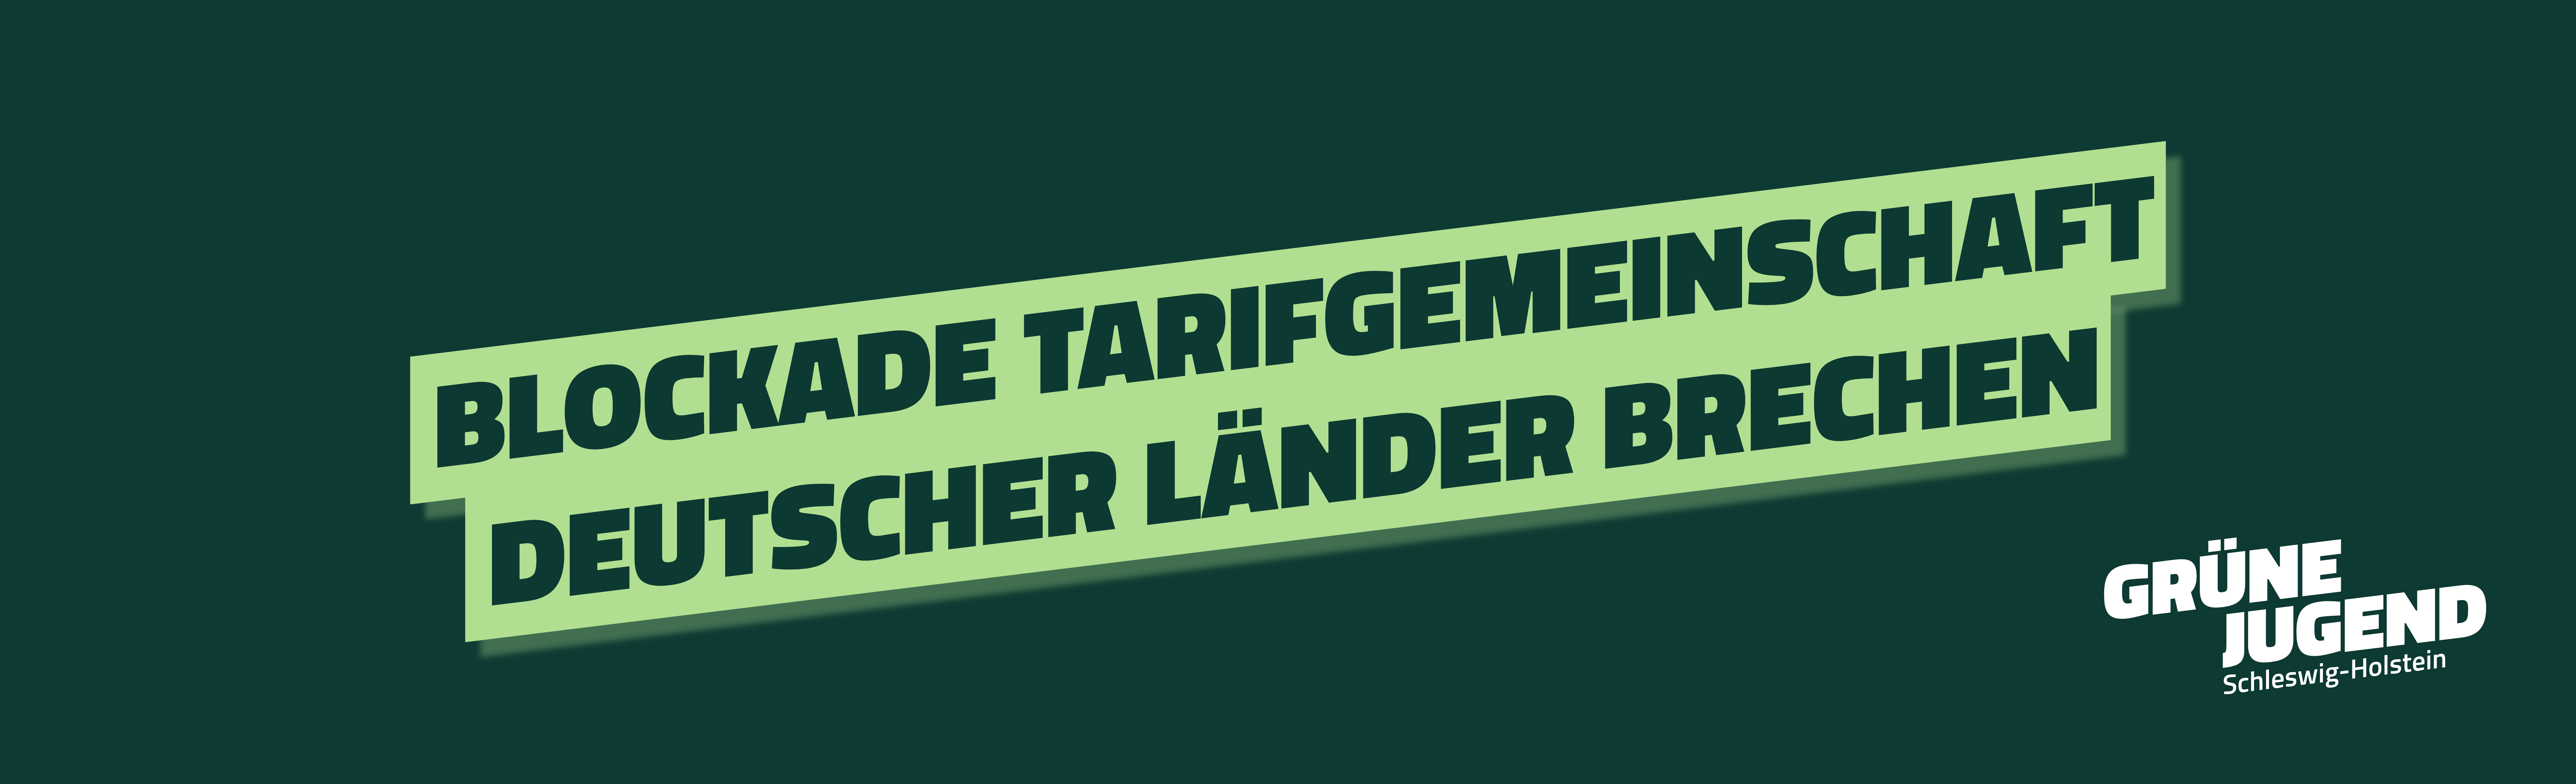 Gemeinsames Statement zu TVStud: Blockade Tarifgemeinschaft deutscher Länder brechen – Monika Heinold muss handeln!